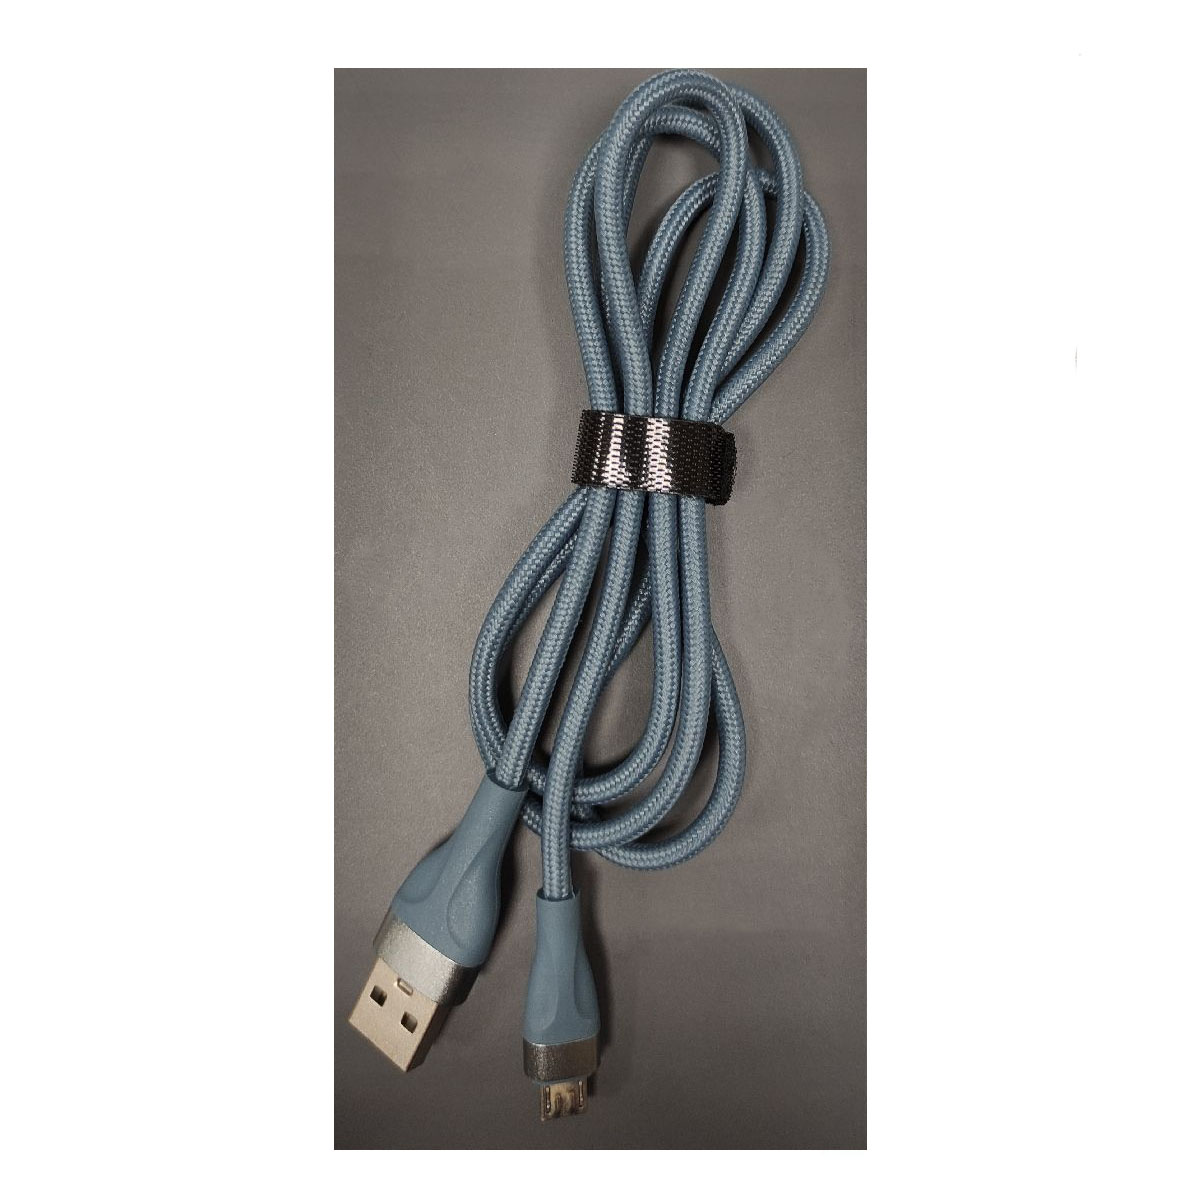 Кабель XB X35m Micro USB, длина 1 метр, цвет серо синий